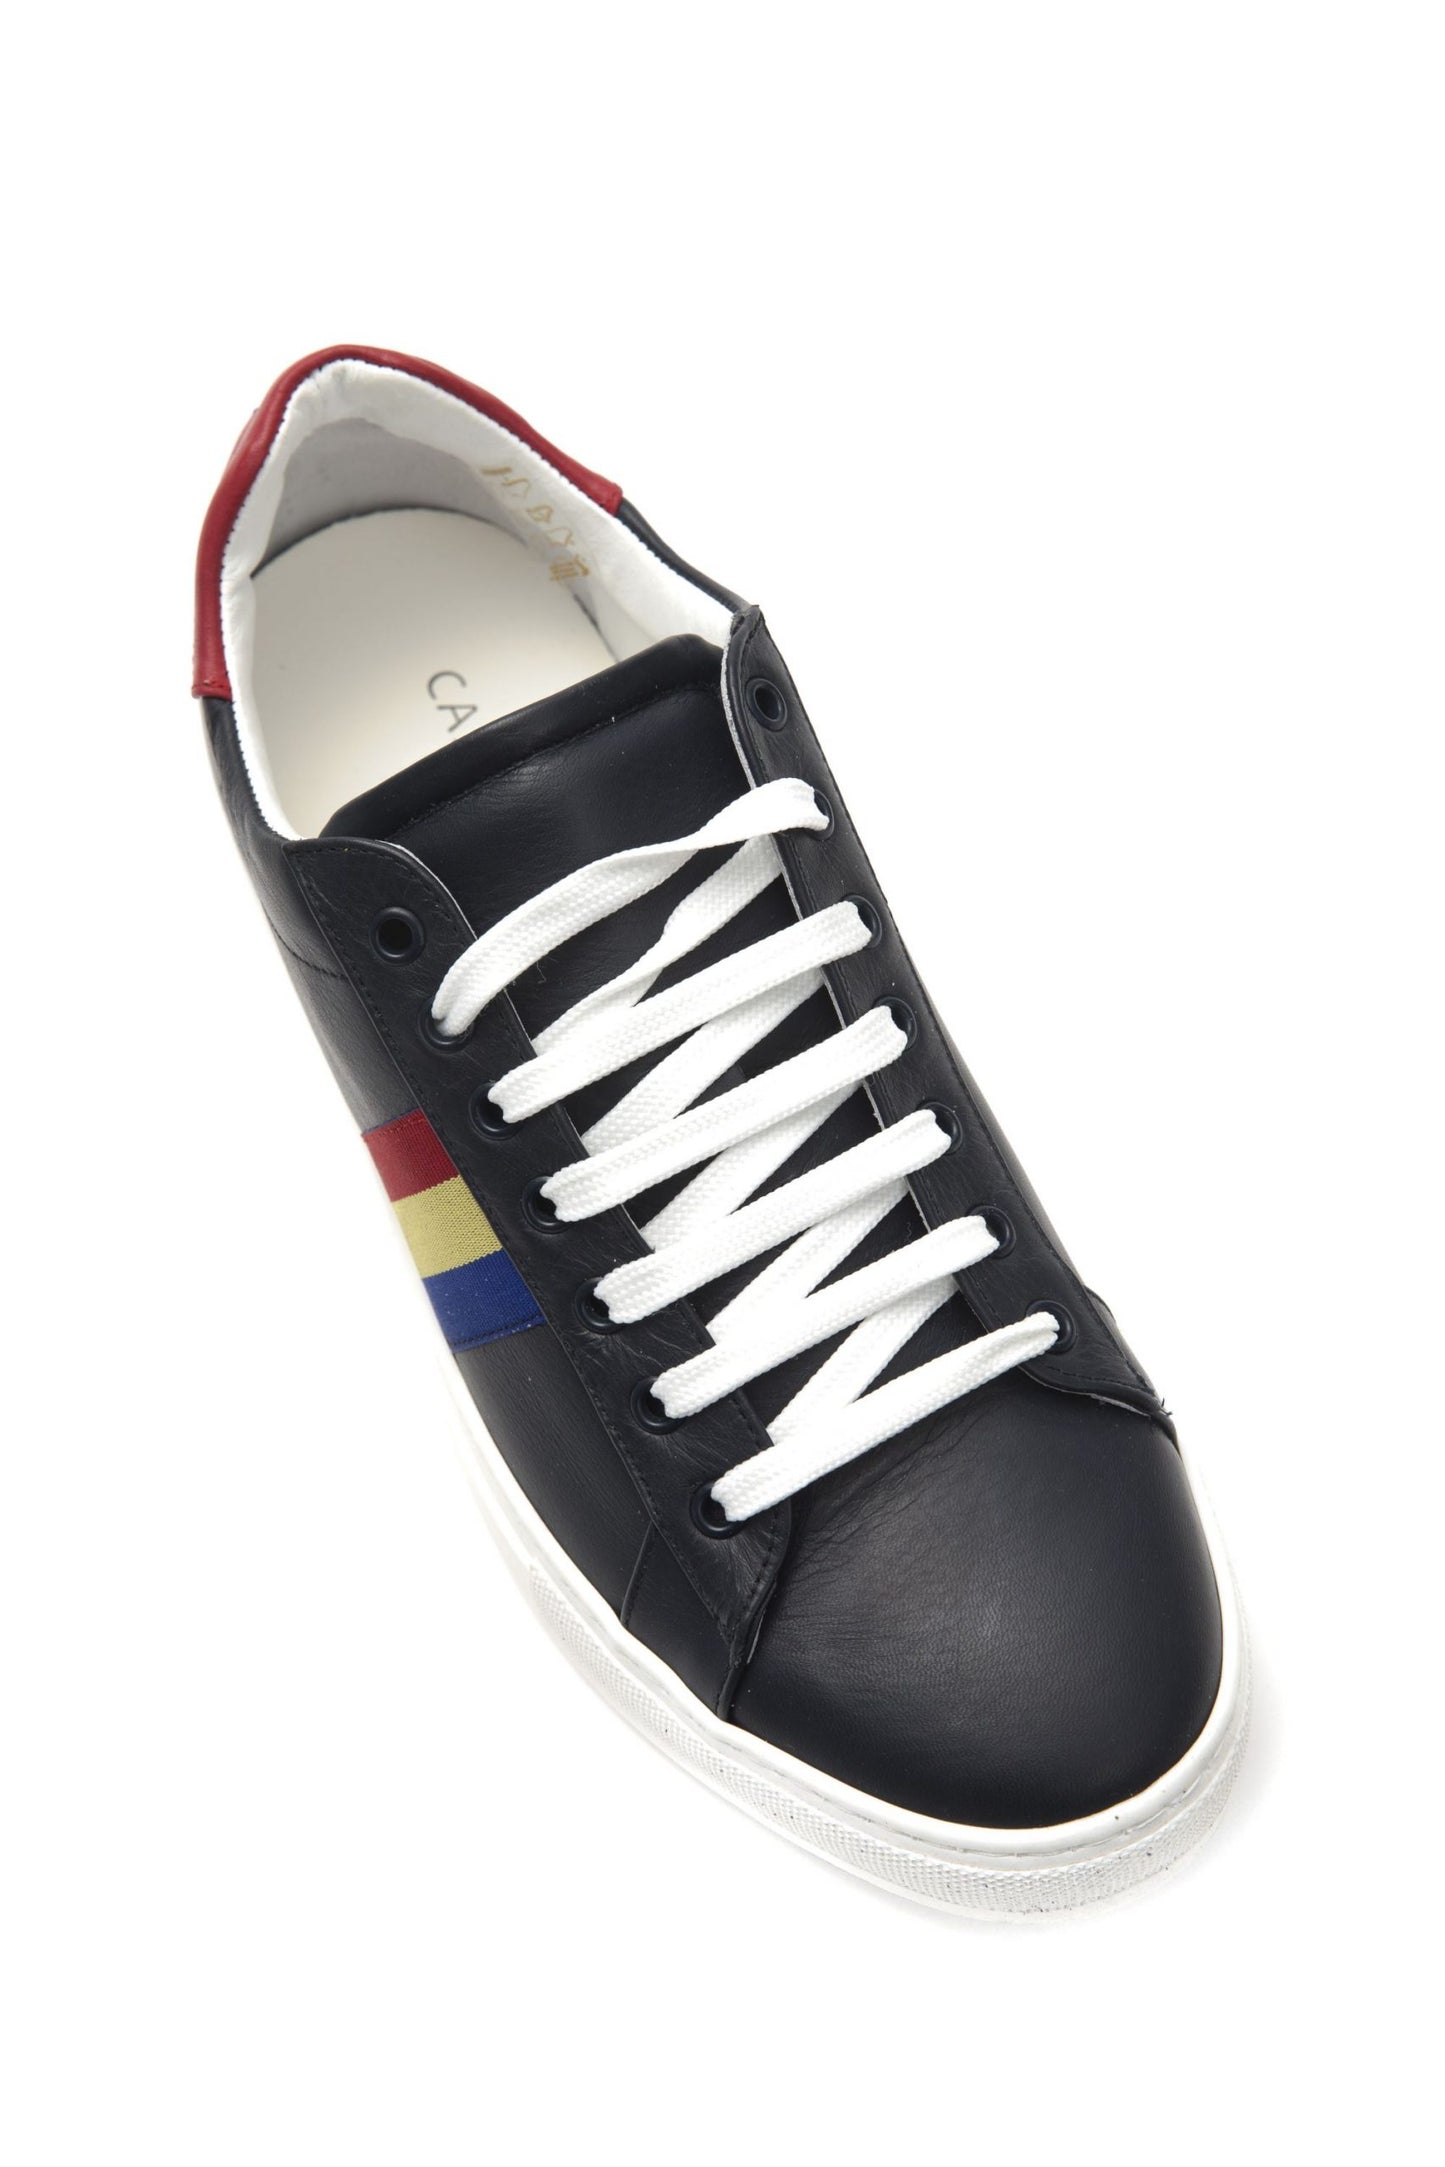 Blu- Ros- Blu Sneakers